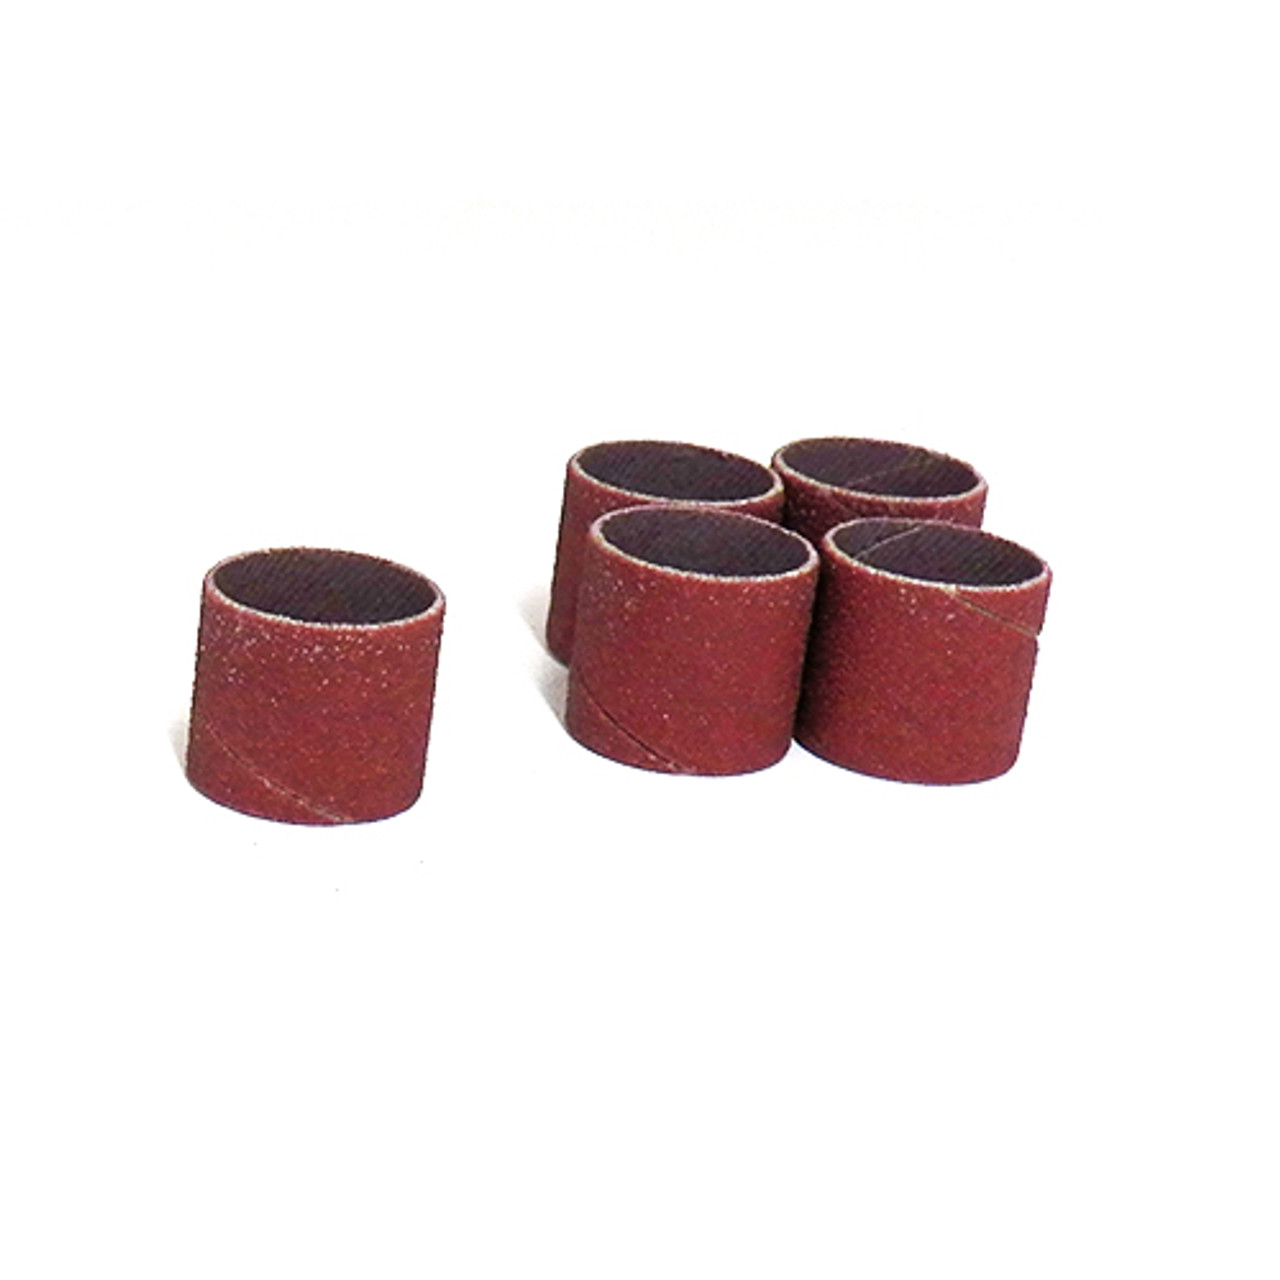 Klingspor Abrasives Aluminum Oxide Sanding Sleeves, 3/4"X 3/4" 150 Grit, 5pk